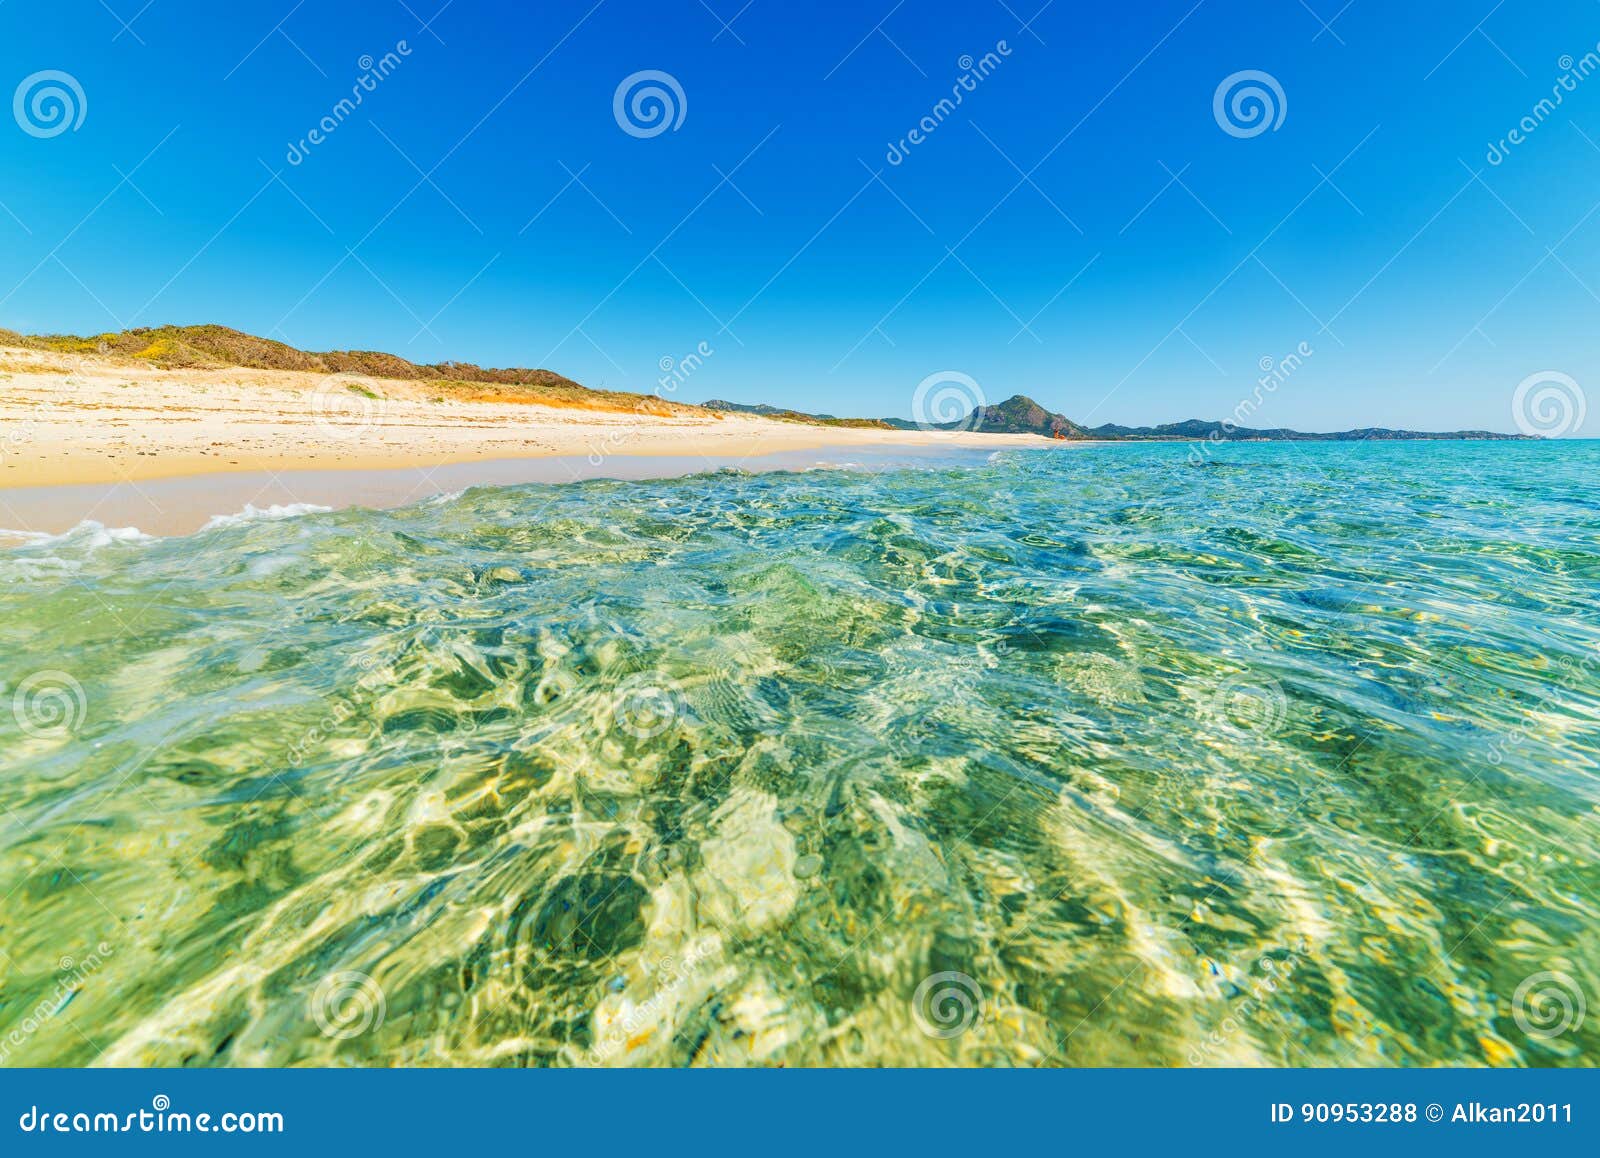 blue sea in piscina rei beach